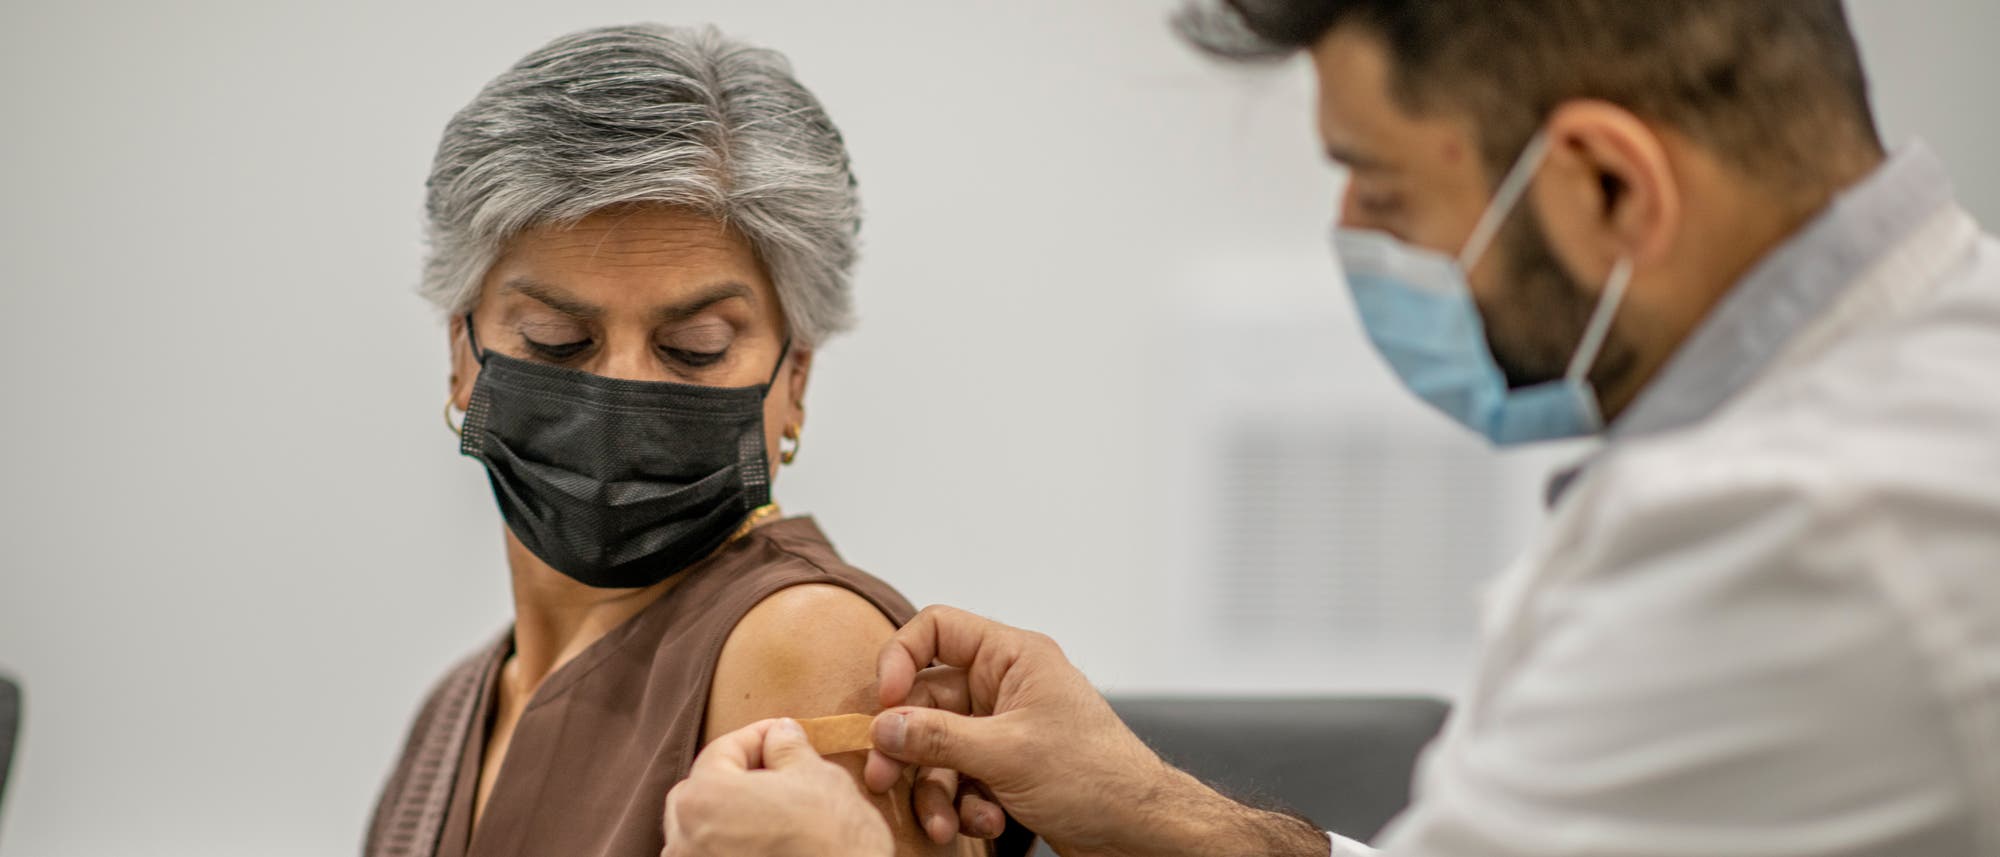 Eine Frau erhält nach der Impfung ein Pflaster auf die Einstichstelle.